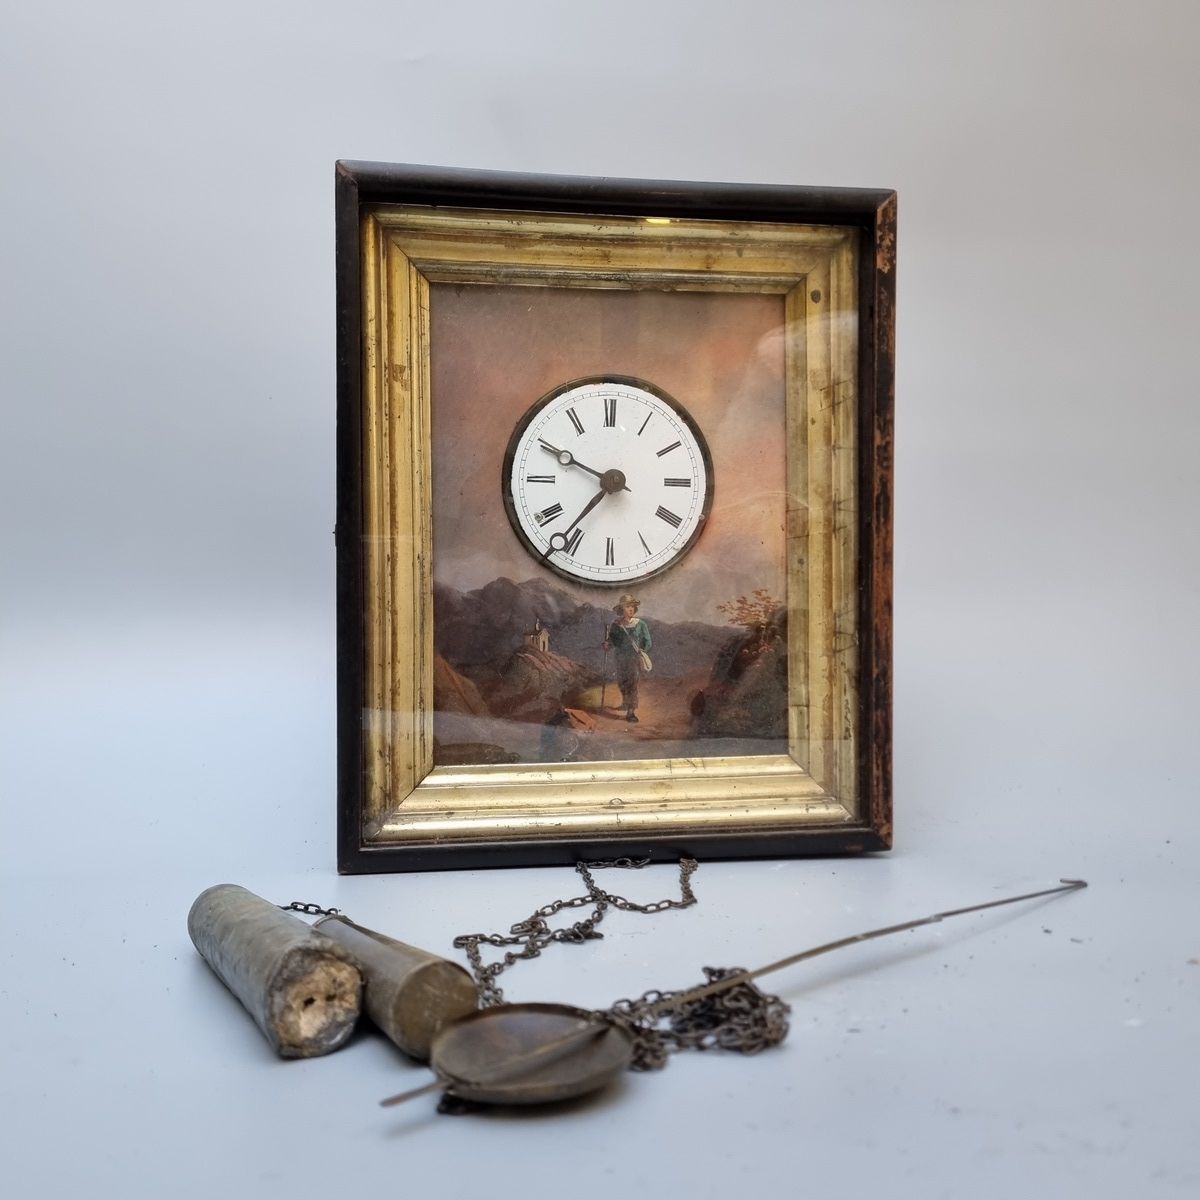 Null Reloj pintado sobre fondo pintado con andadores, para colgar

H: 30 cm